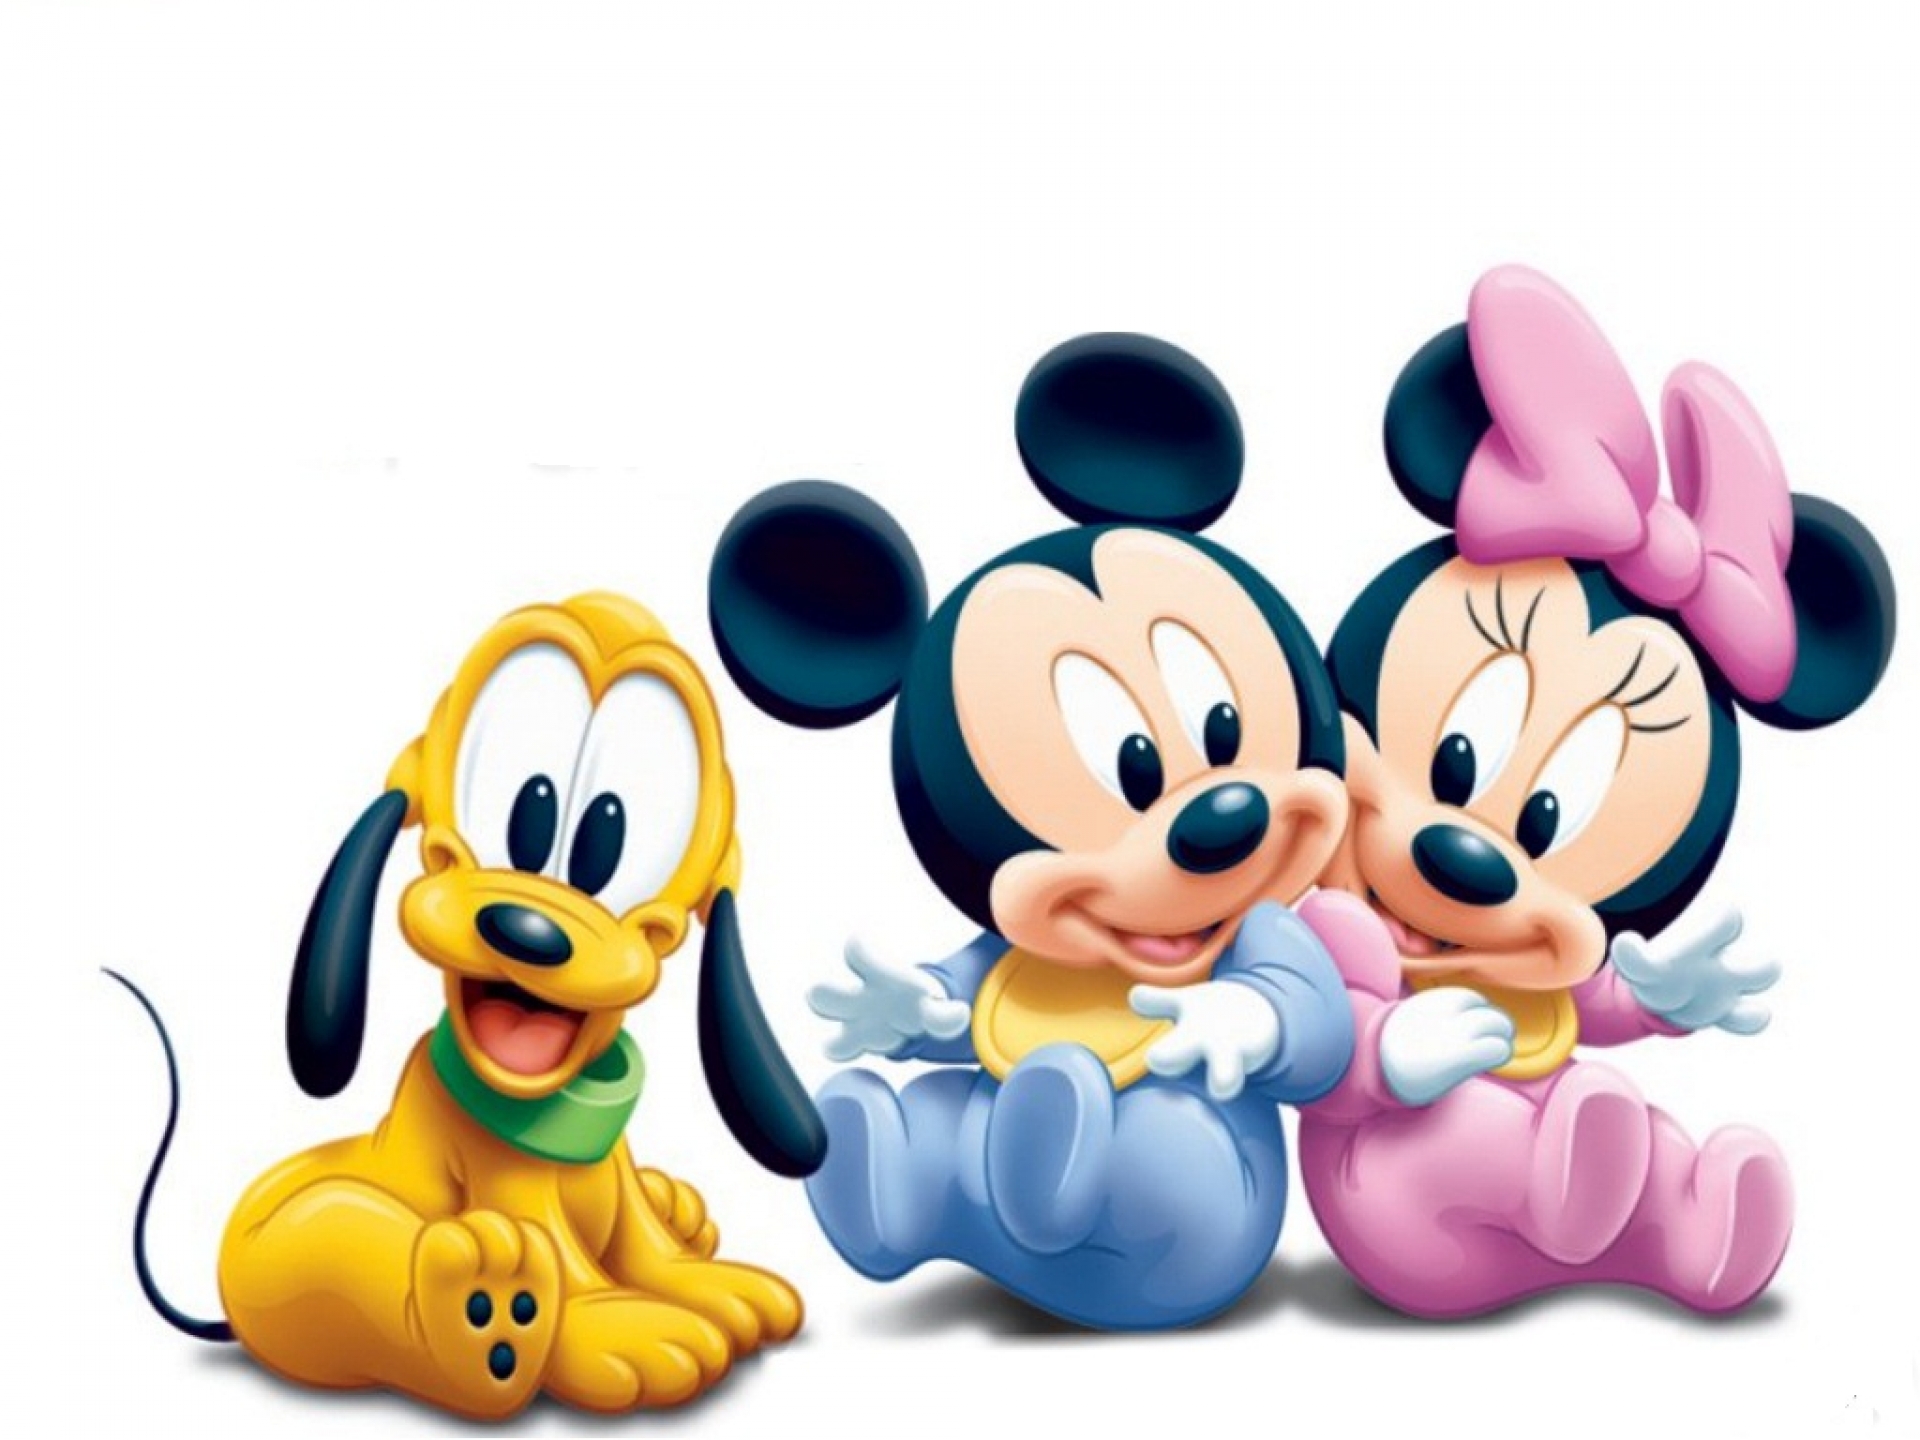 Cute Disney Baby Mickey Mouse Cartoon Wallpaper #1750 | Foolhardi.